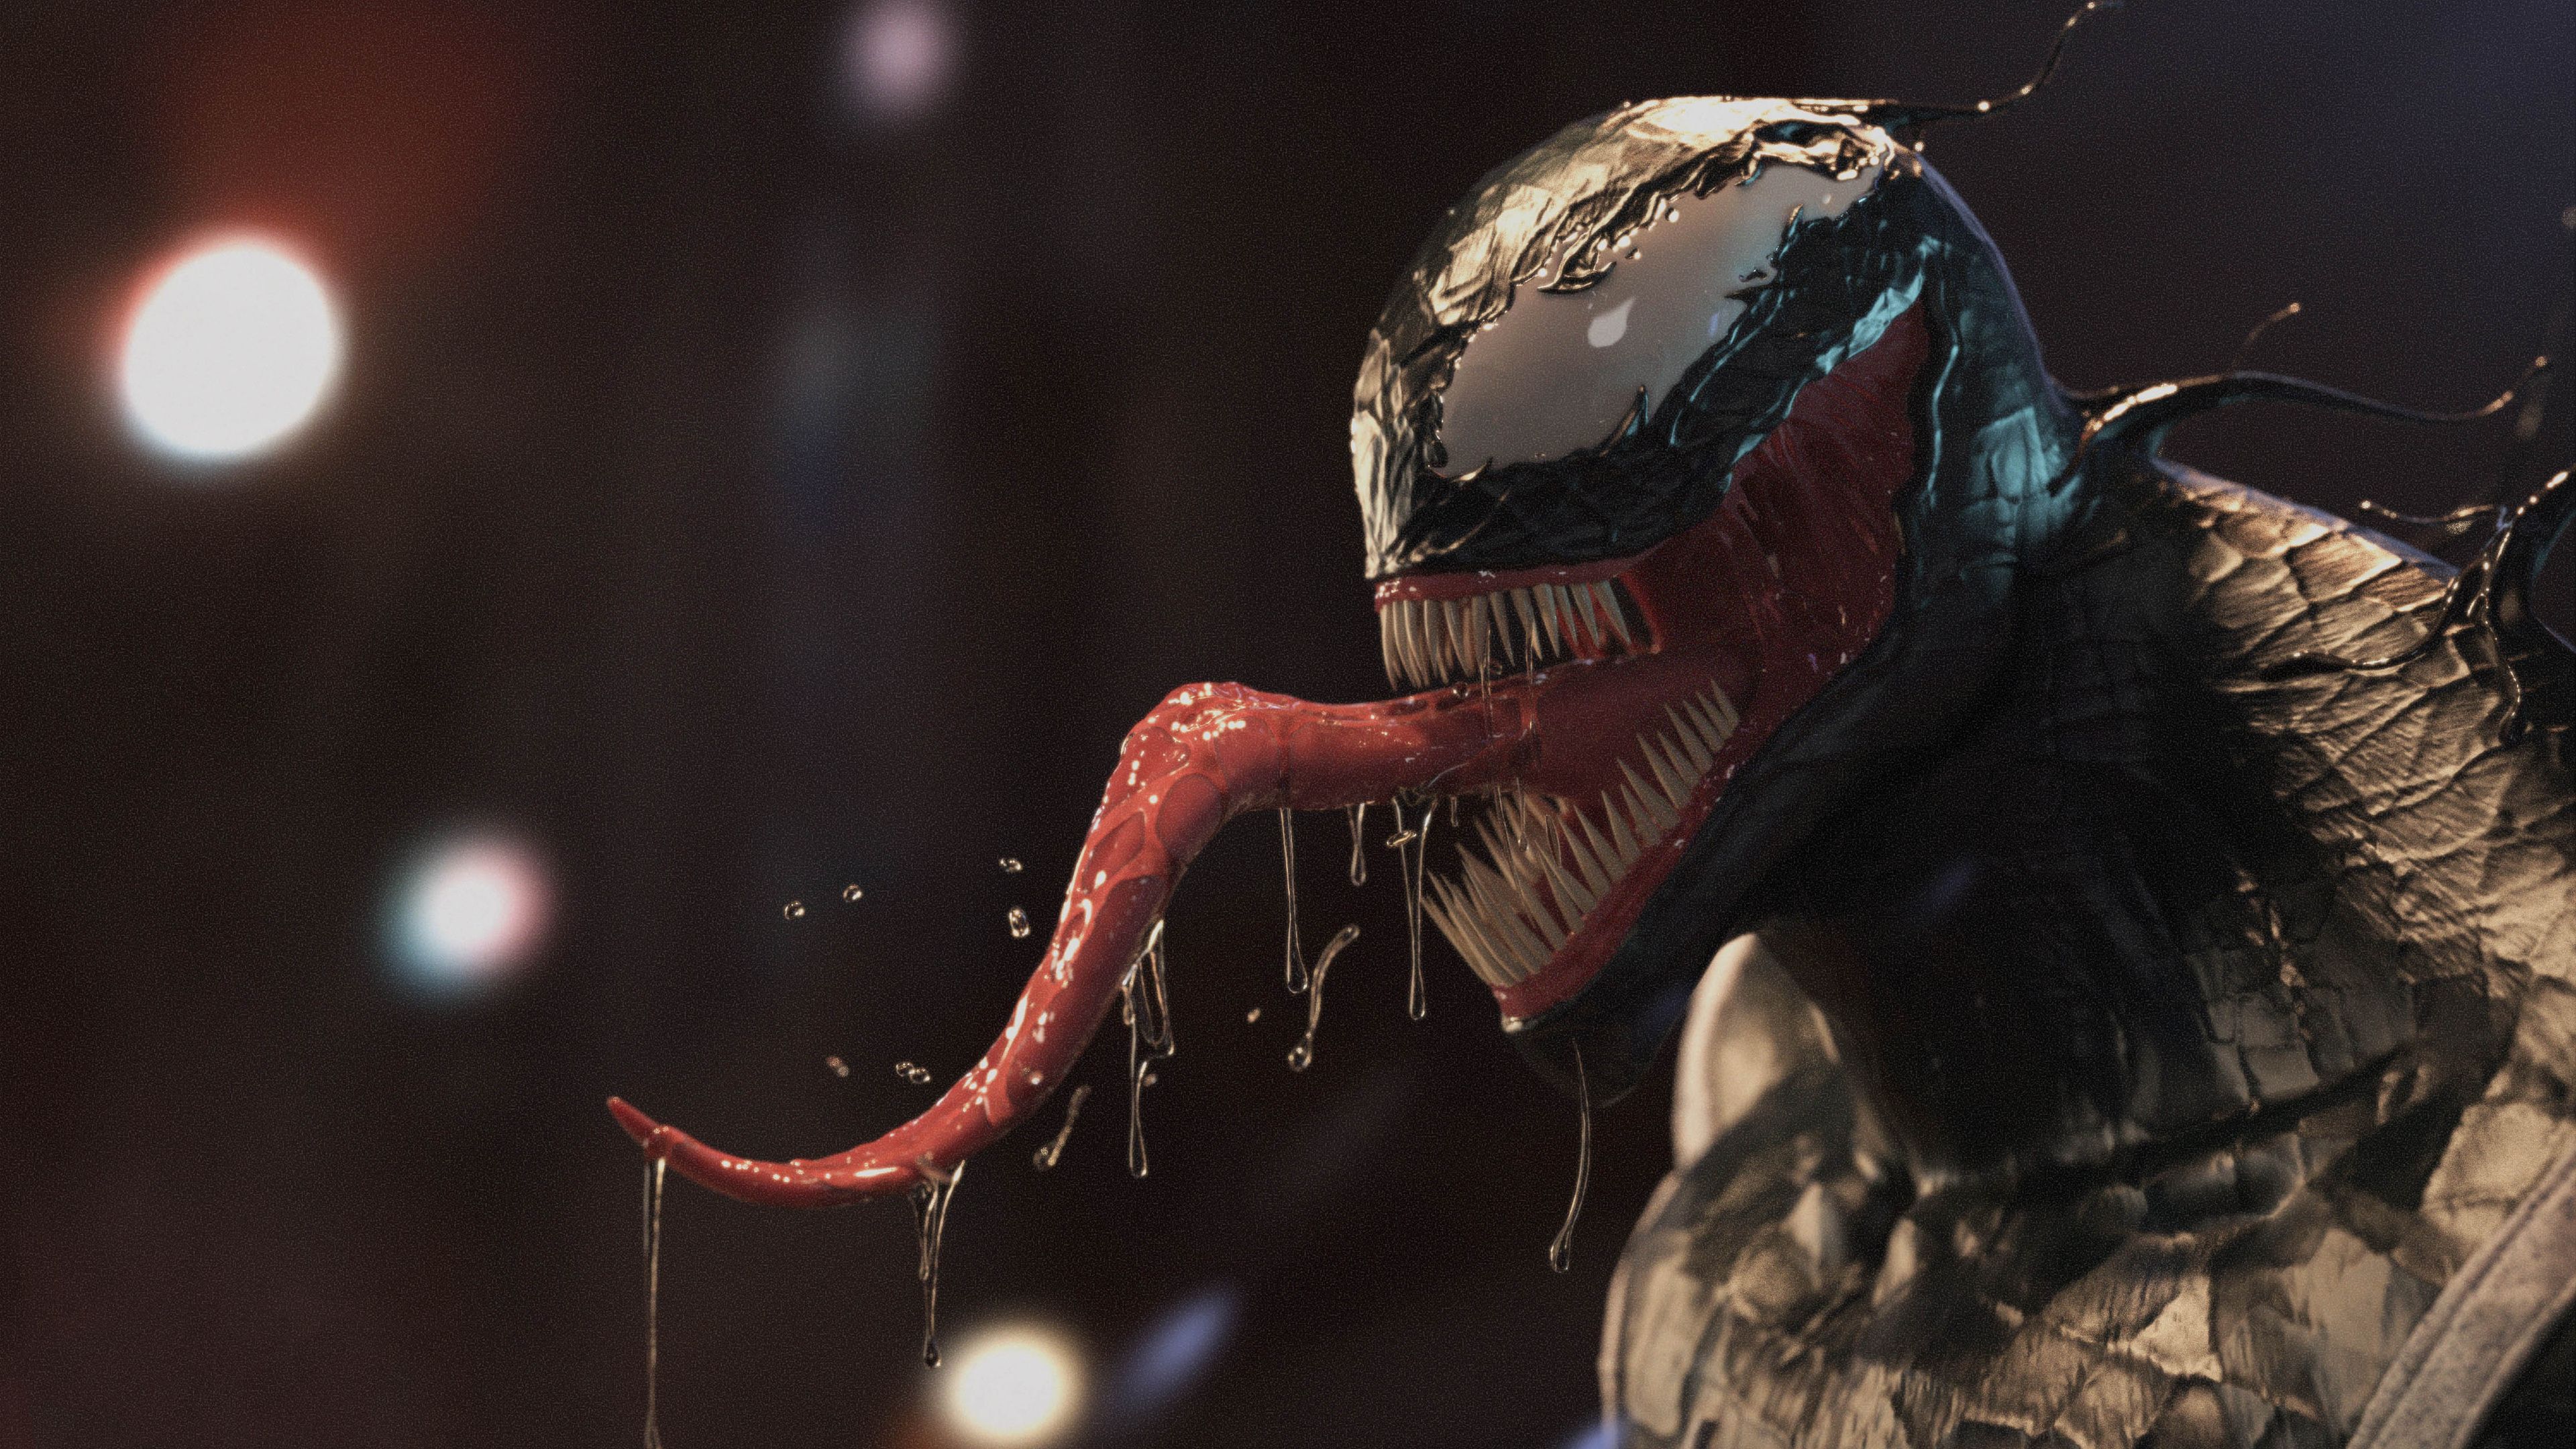 Venom Movie Background HD. Universal Movies Streaming Online